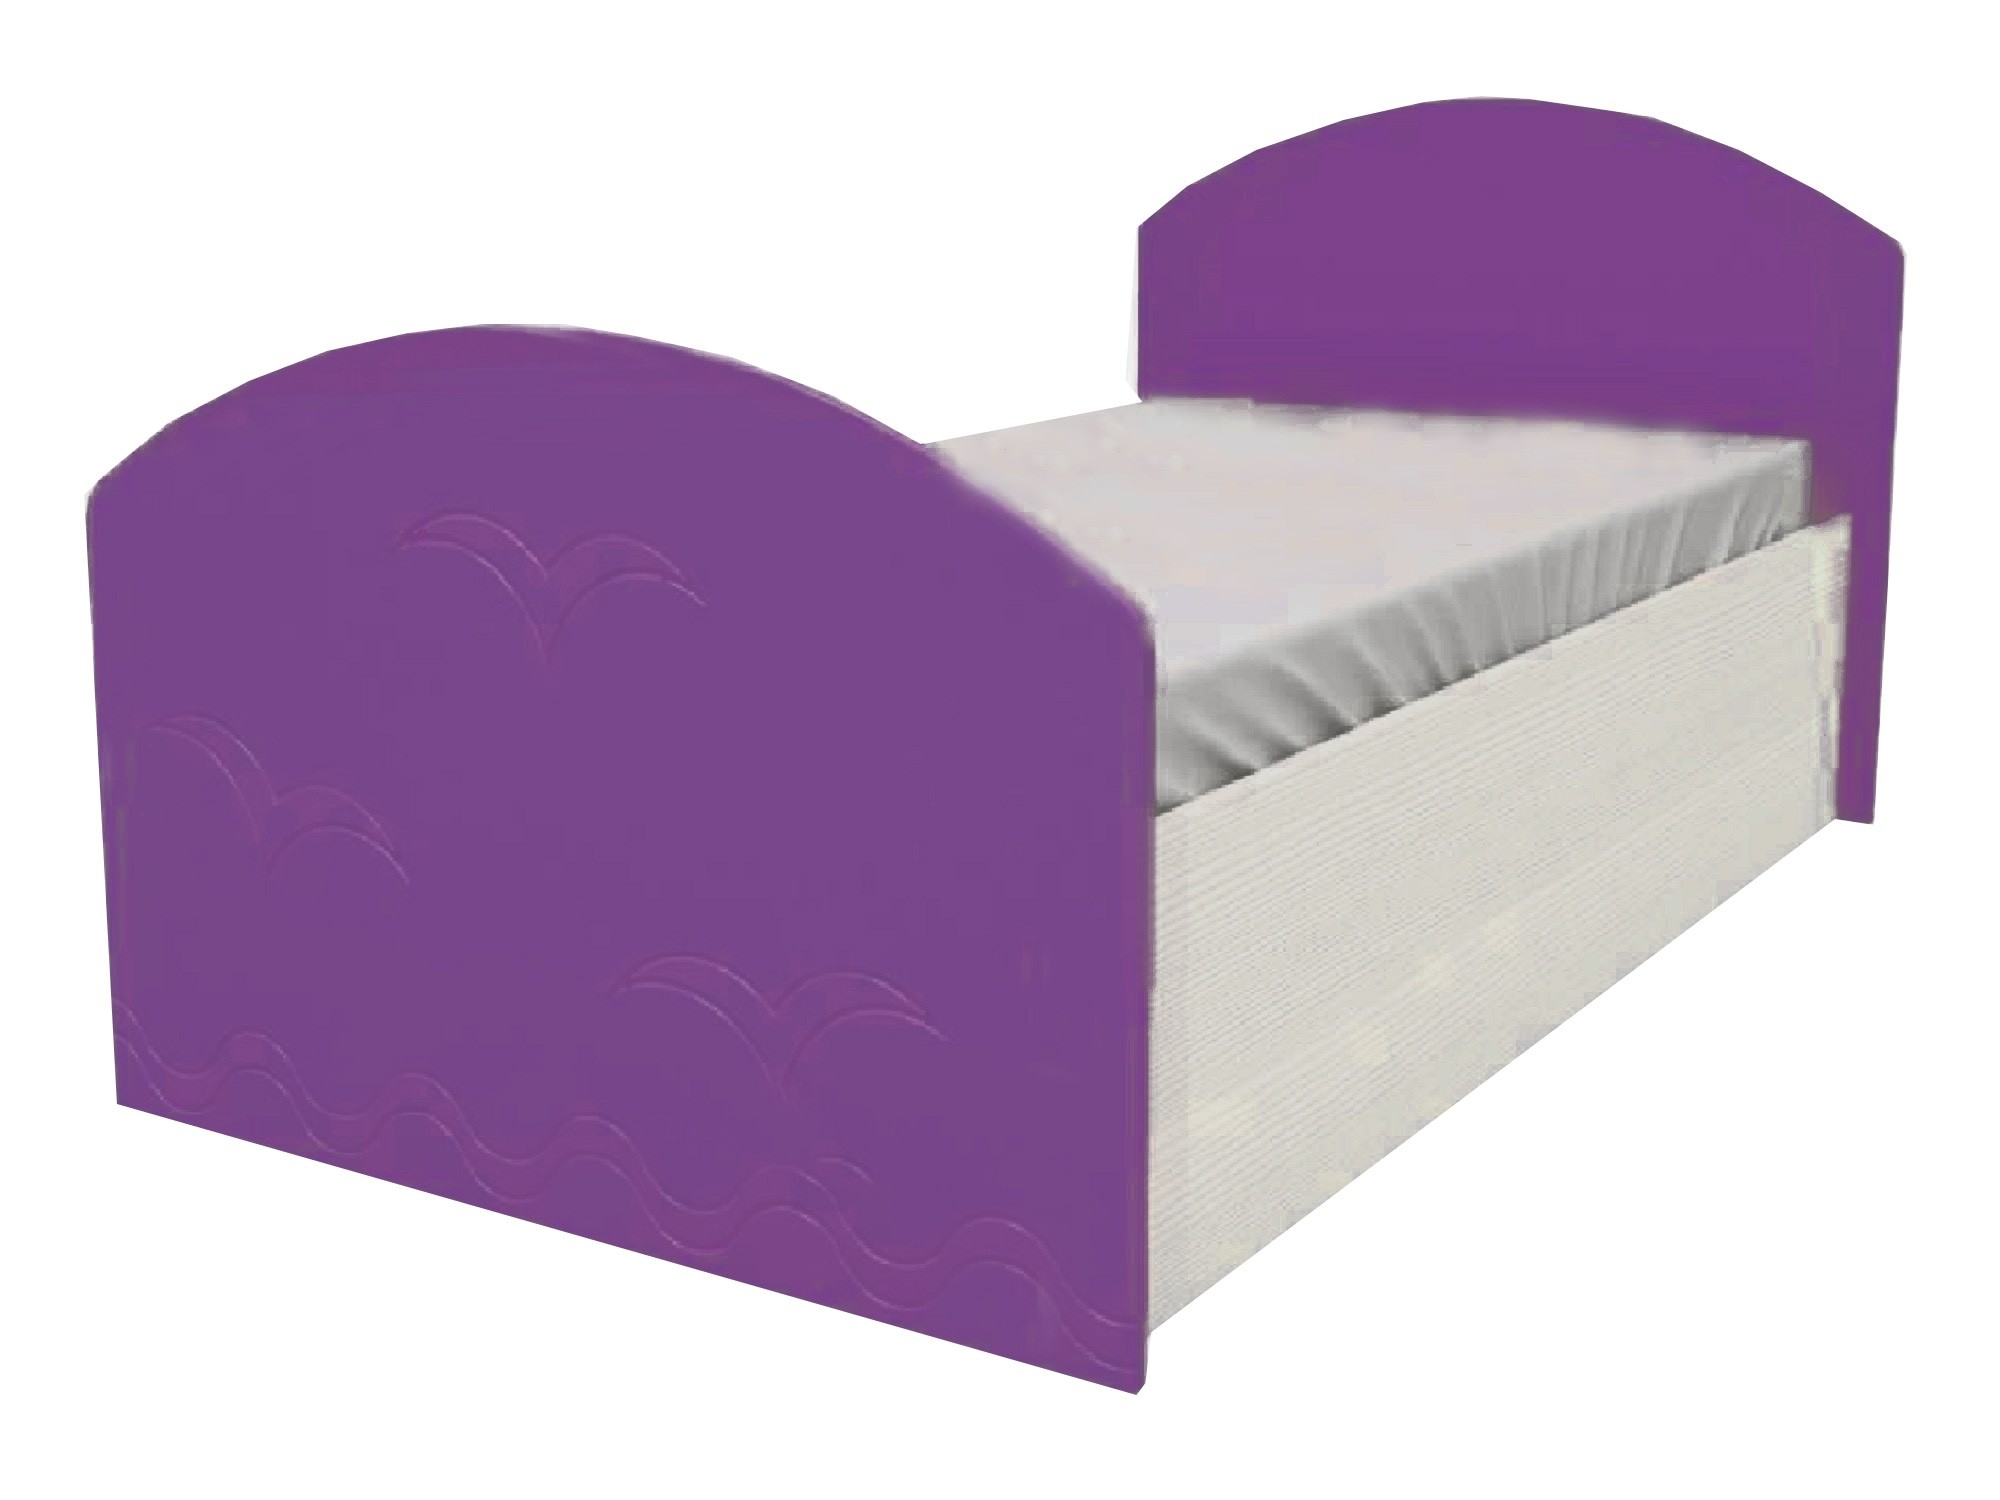 Юниор-2 Детская кровать 80, металлик (Фиолетовый металлик, Дуб белёный) Дуб белёный, МДФ, ЛДСП юниор 2 детская кровать 80 металлик салат металл дуб белёный дуб белёный мдф лдсп